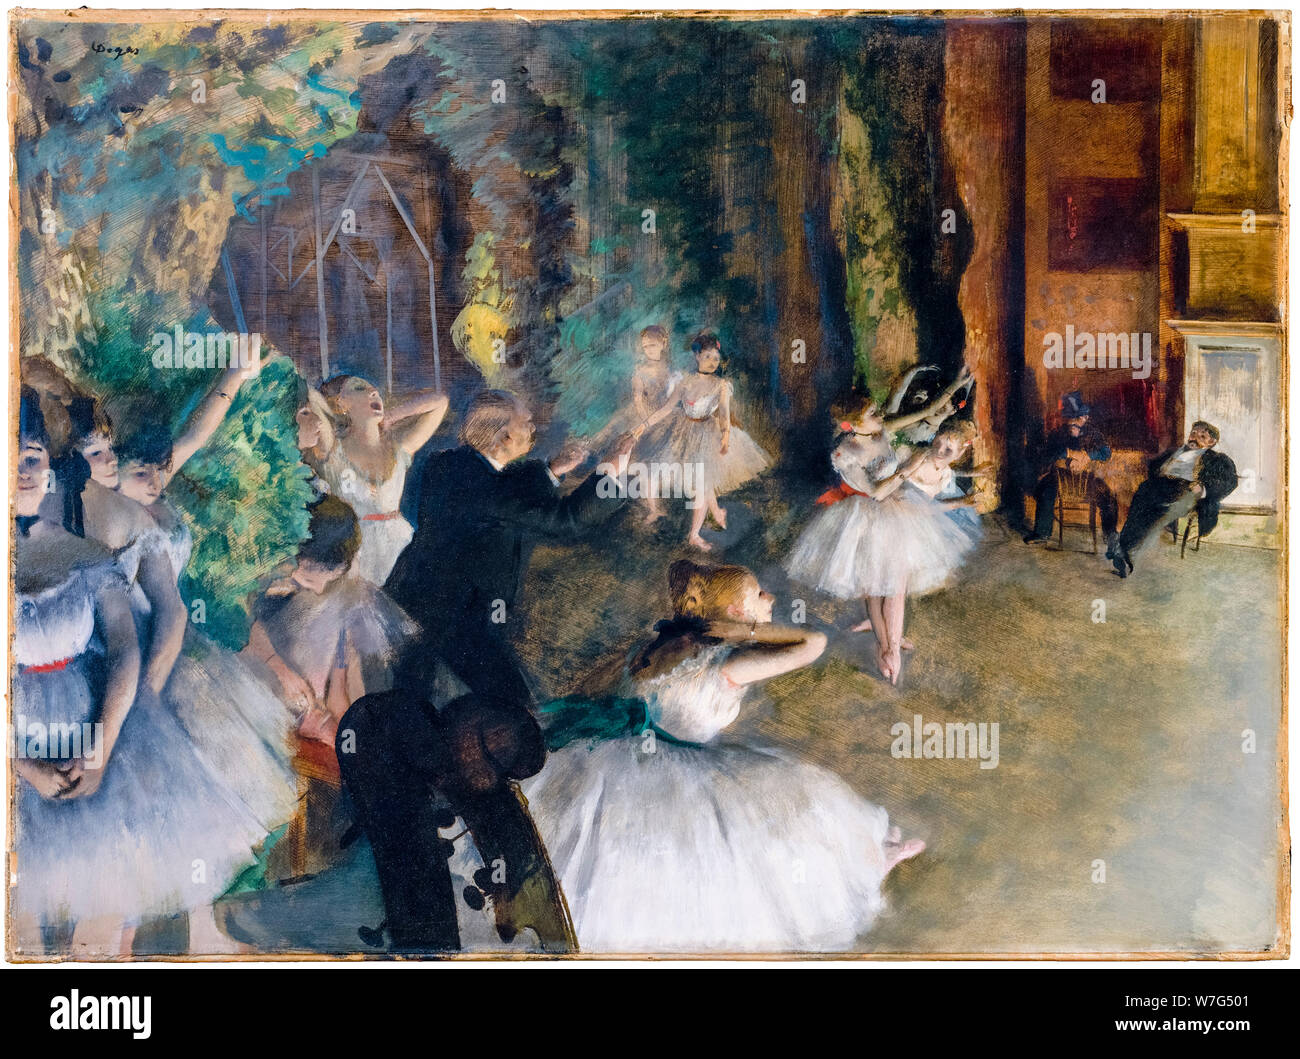 Edgar Degas, peinture dans des médias mixtes, le rechaud du Ballet sur scène, 1874 Banque D'Images